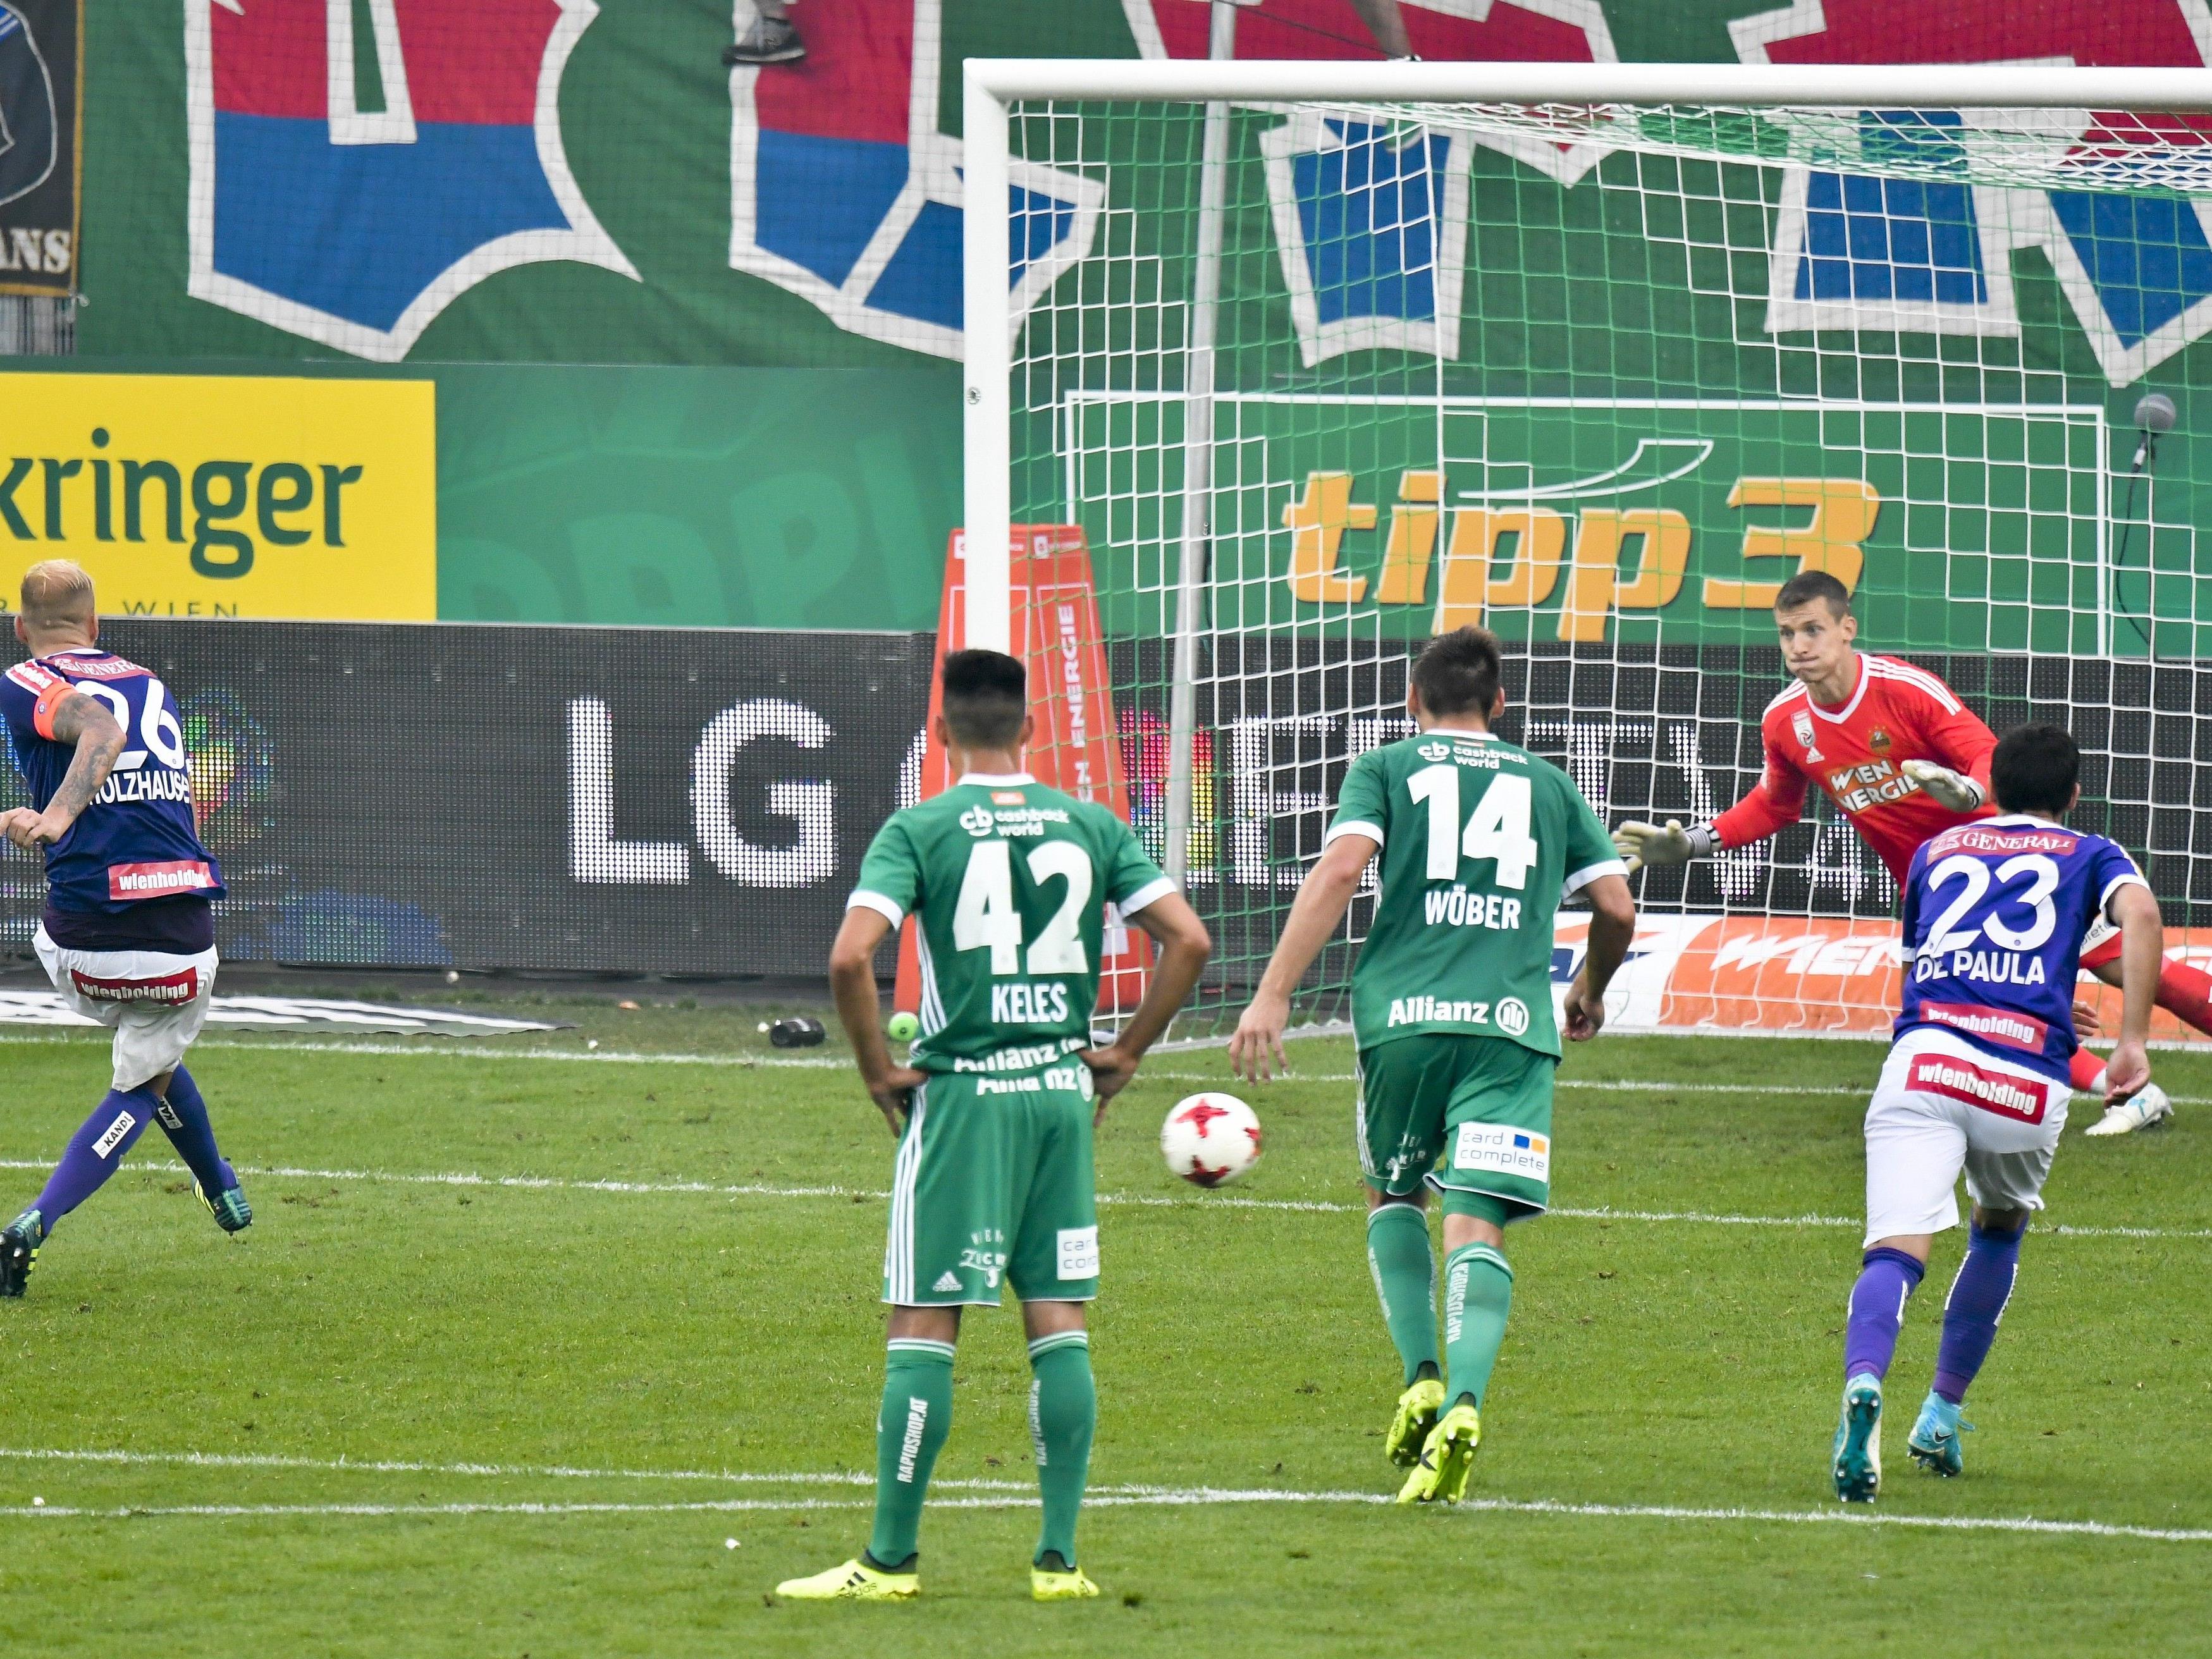 Die Bundesliga leitete nach den Vorkomnissen beim Wiener Derby ein Verfahren ein.